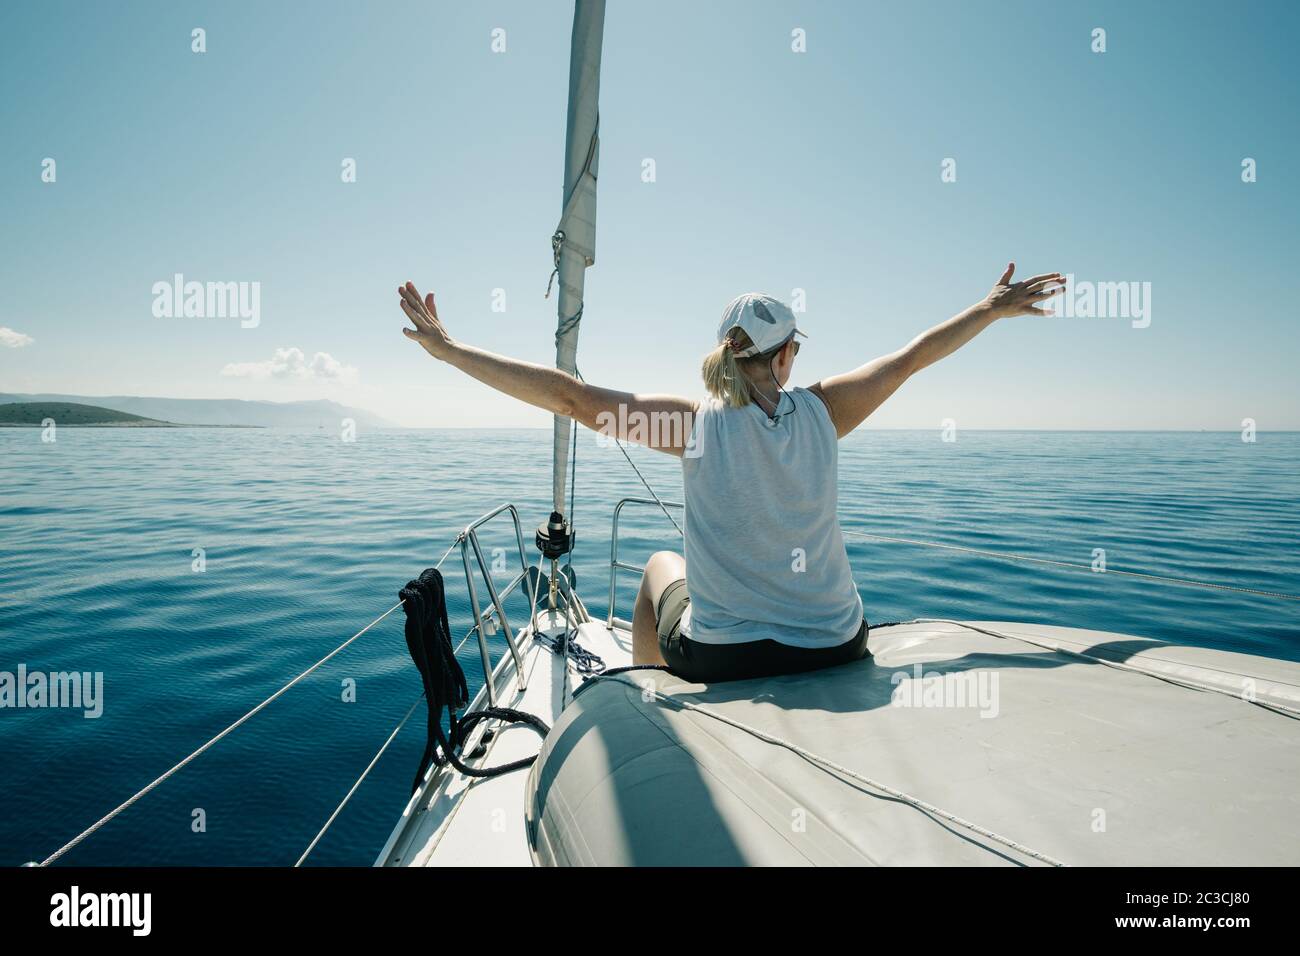 Donna seduta sulle navi prua godendo il viaggio yacht con le braccia aperte. Vela, vela e tr Foto Stock